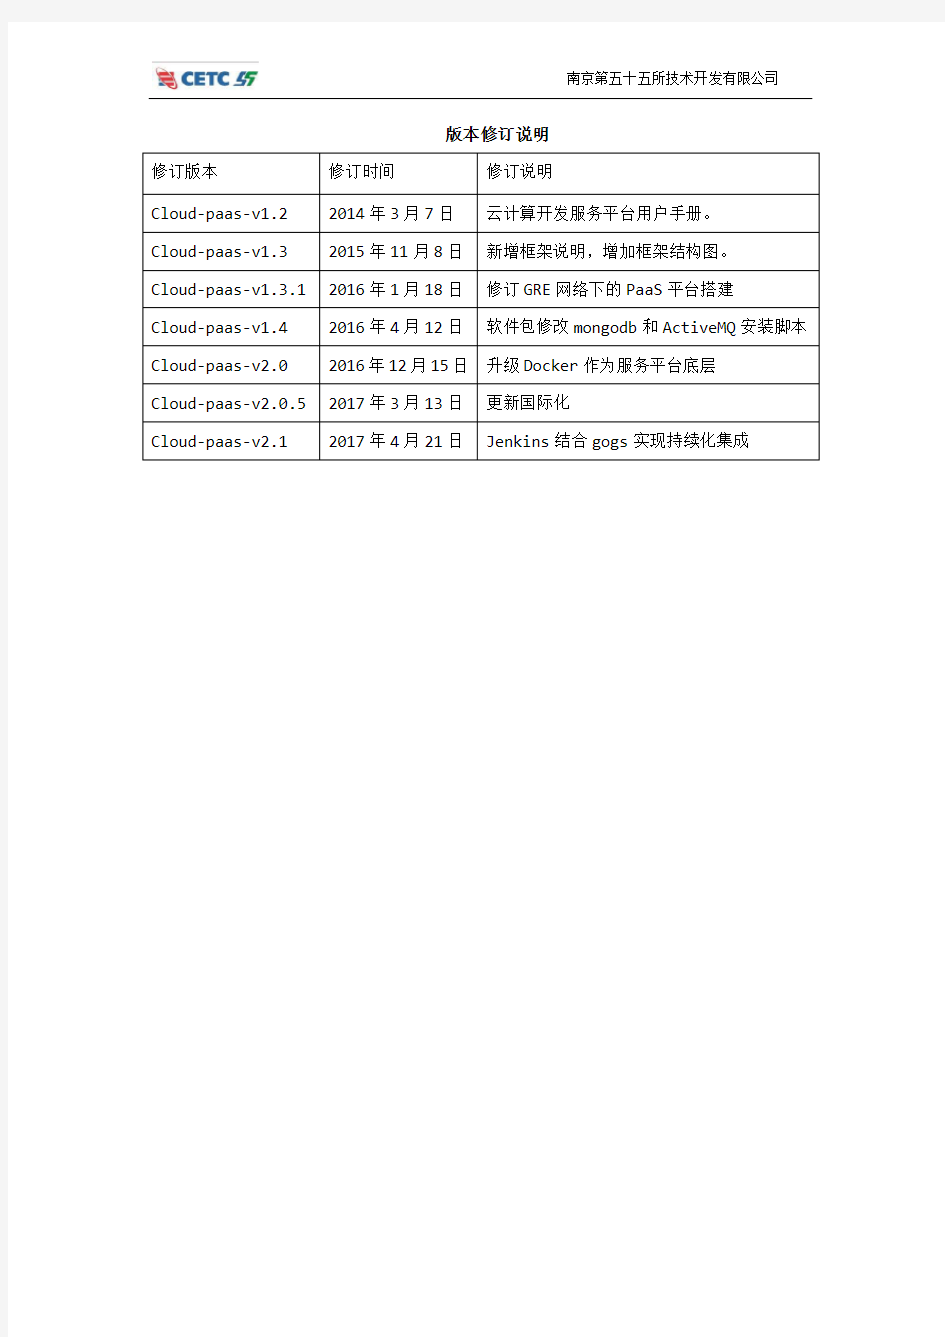 (完整word版)先电云计算开发服务平台用户手册-XianDian-Paas-v2.1